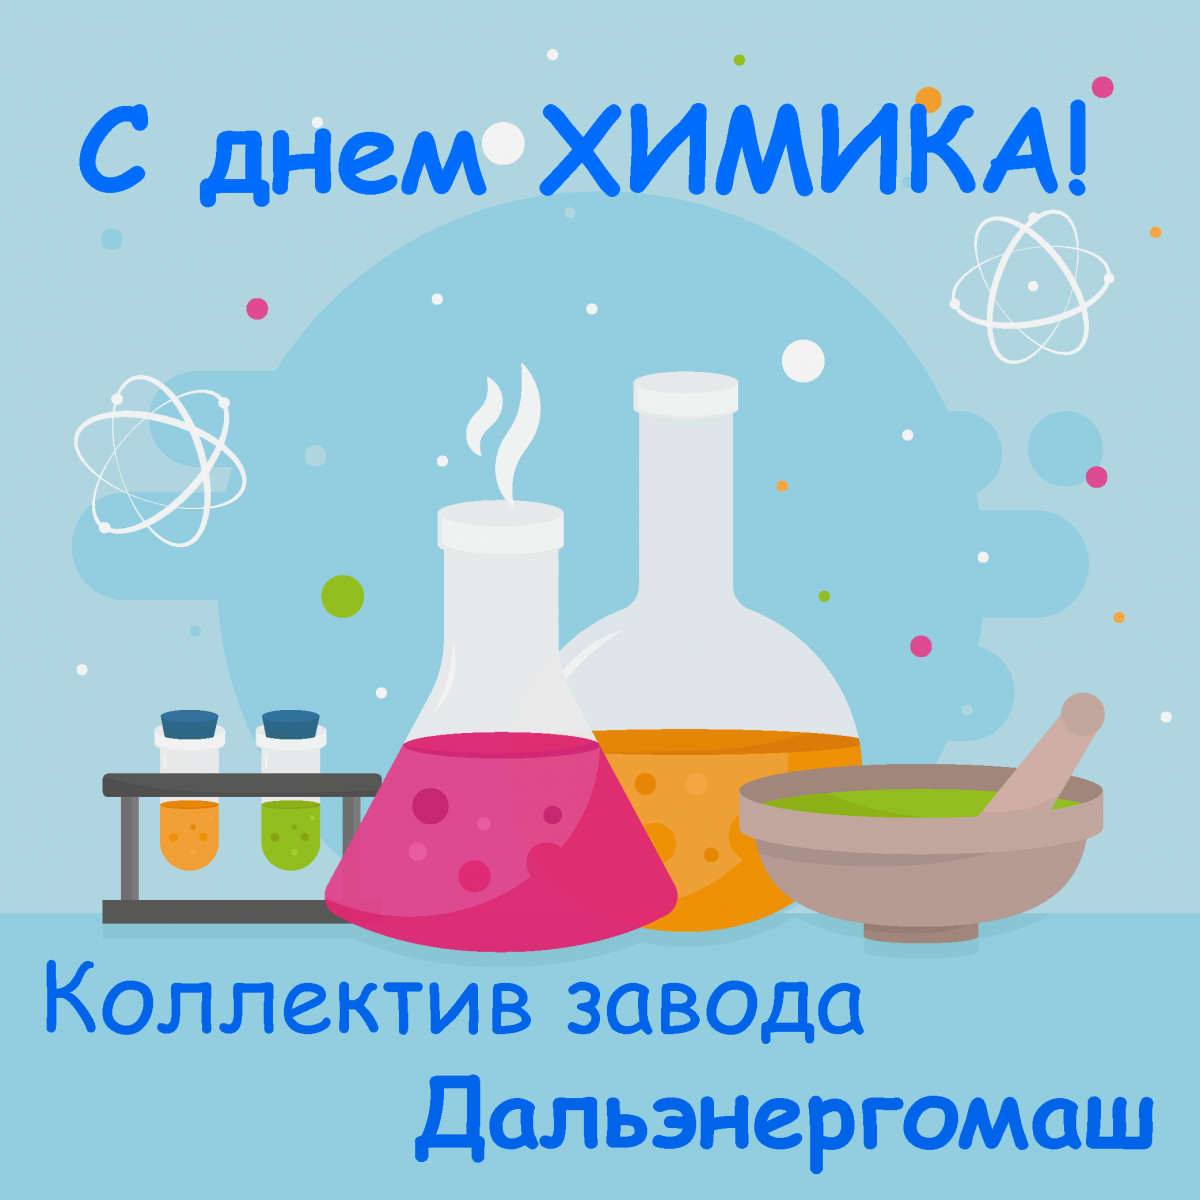 С днем рождения химику. С днем химика. Поздравление с днем химика. С днём химика открытки. День химии.